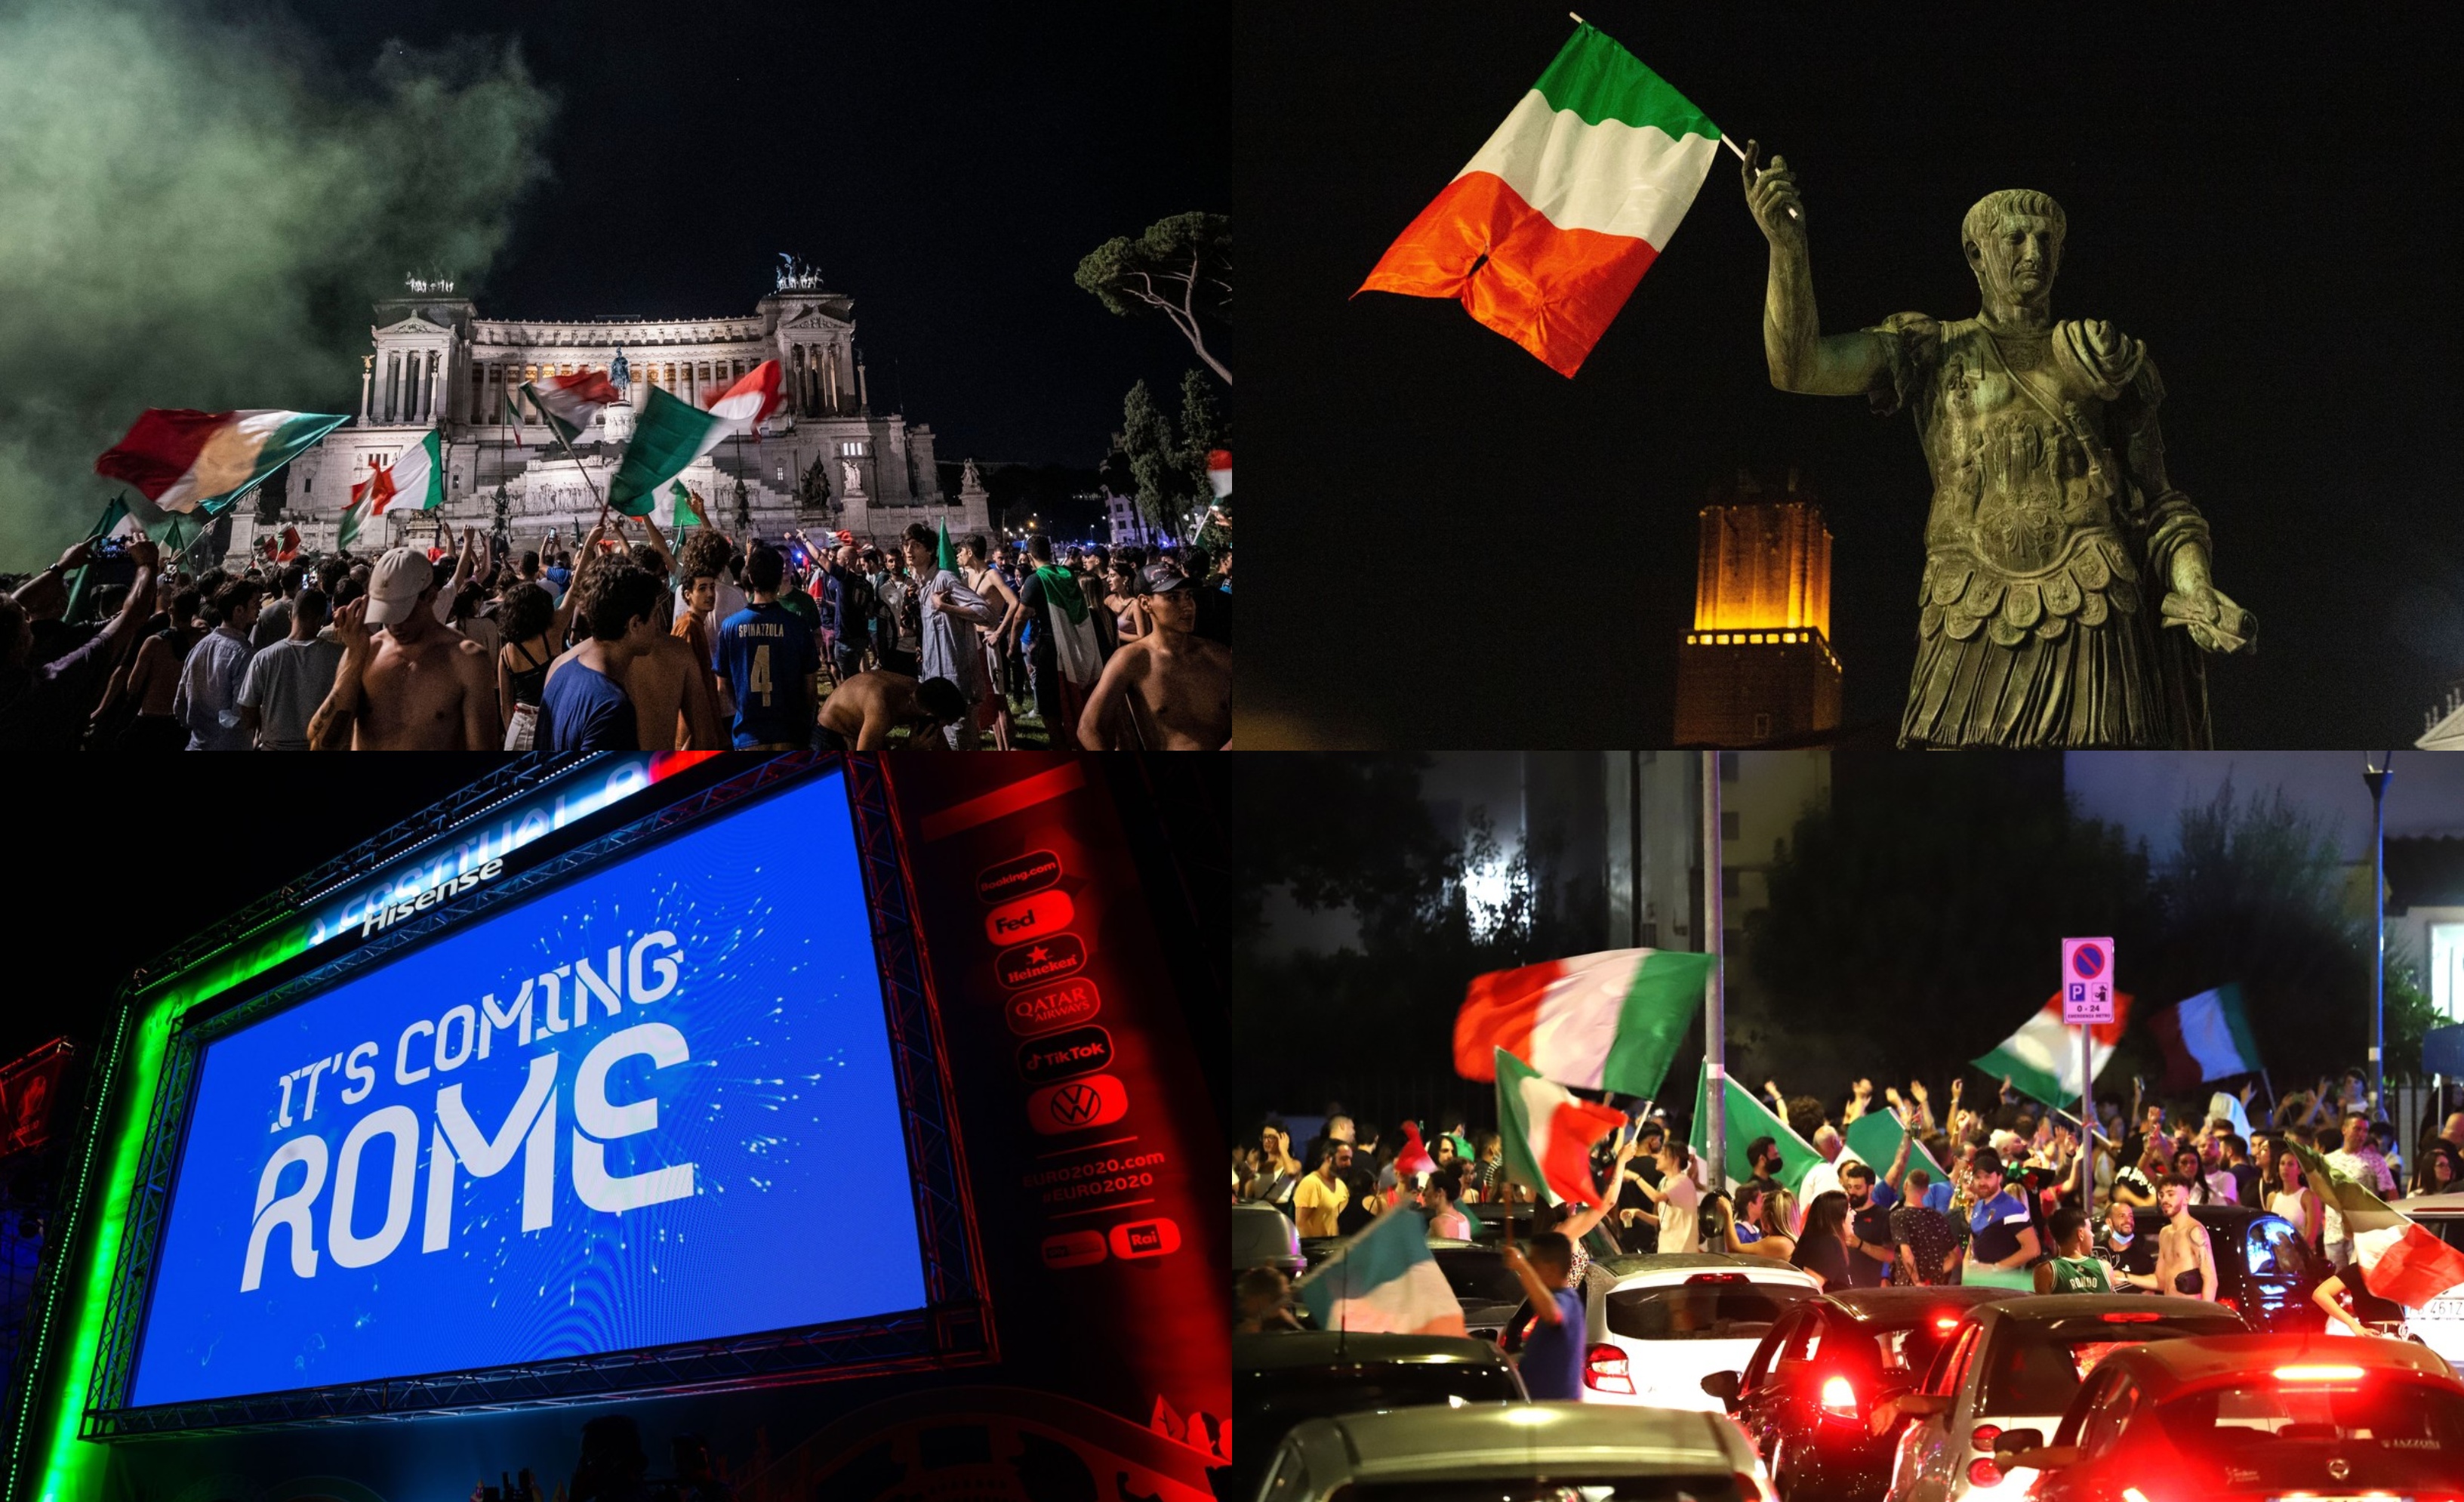 Its coming to Rome! Italienii au sărbătorit pe străzi succesul Squadra Azzurra de la EURO 2020